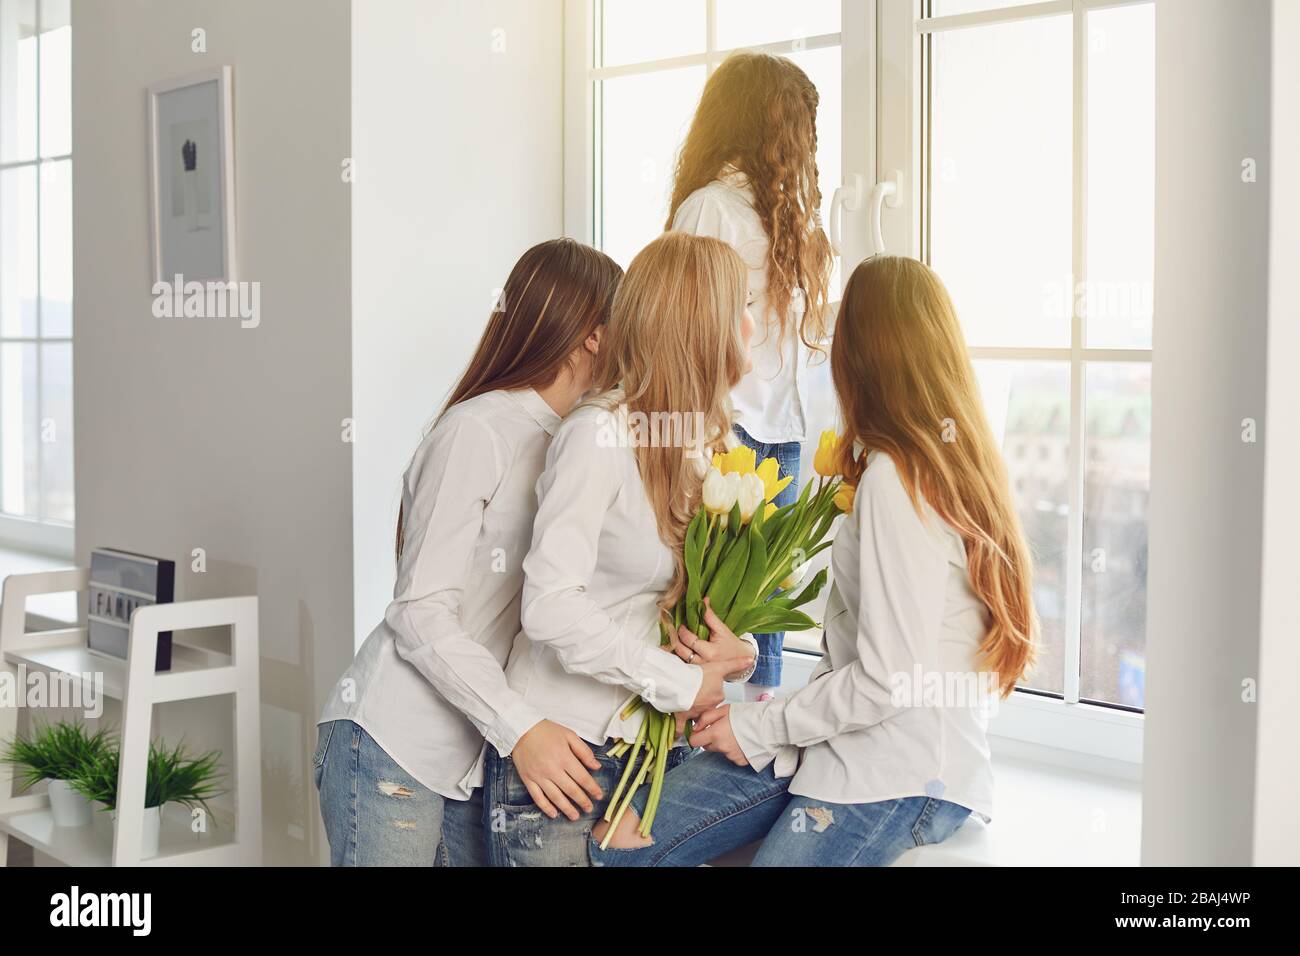 Buona festa della mamma. Una madre e tre figlie con fiori che guardano la finestra nella casa. Foto Stock